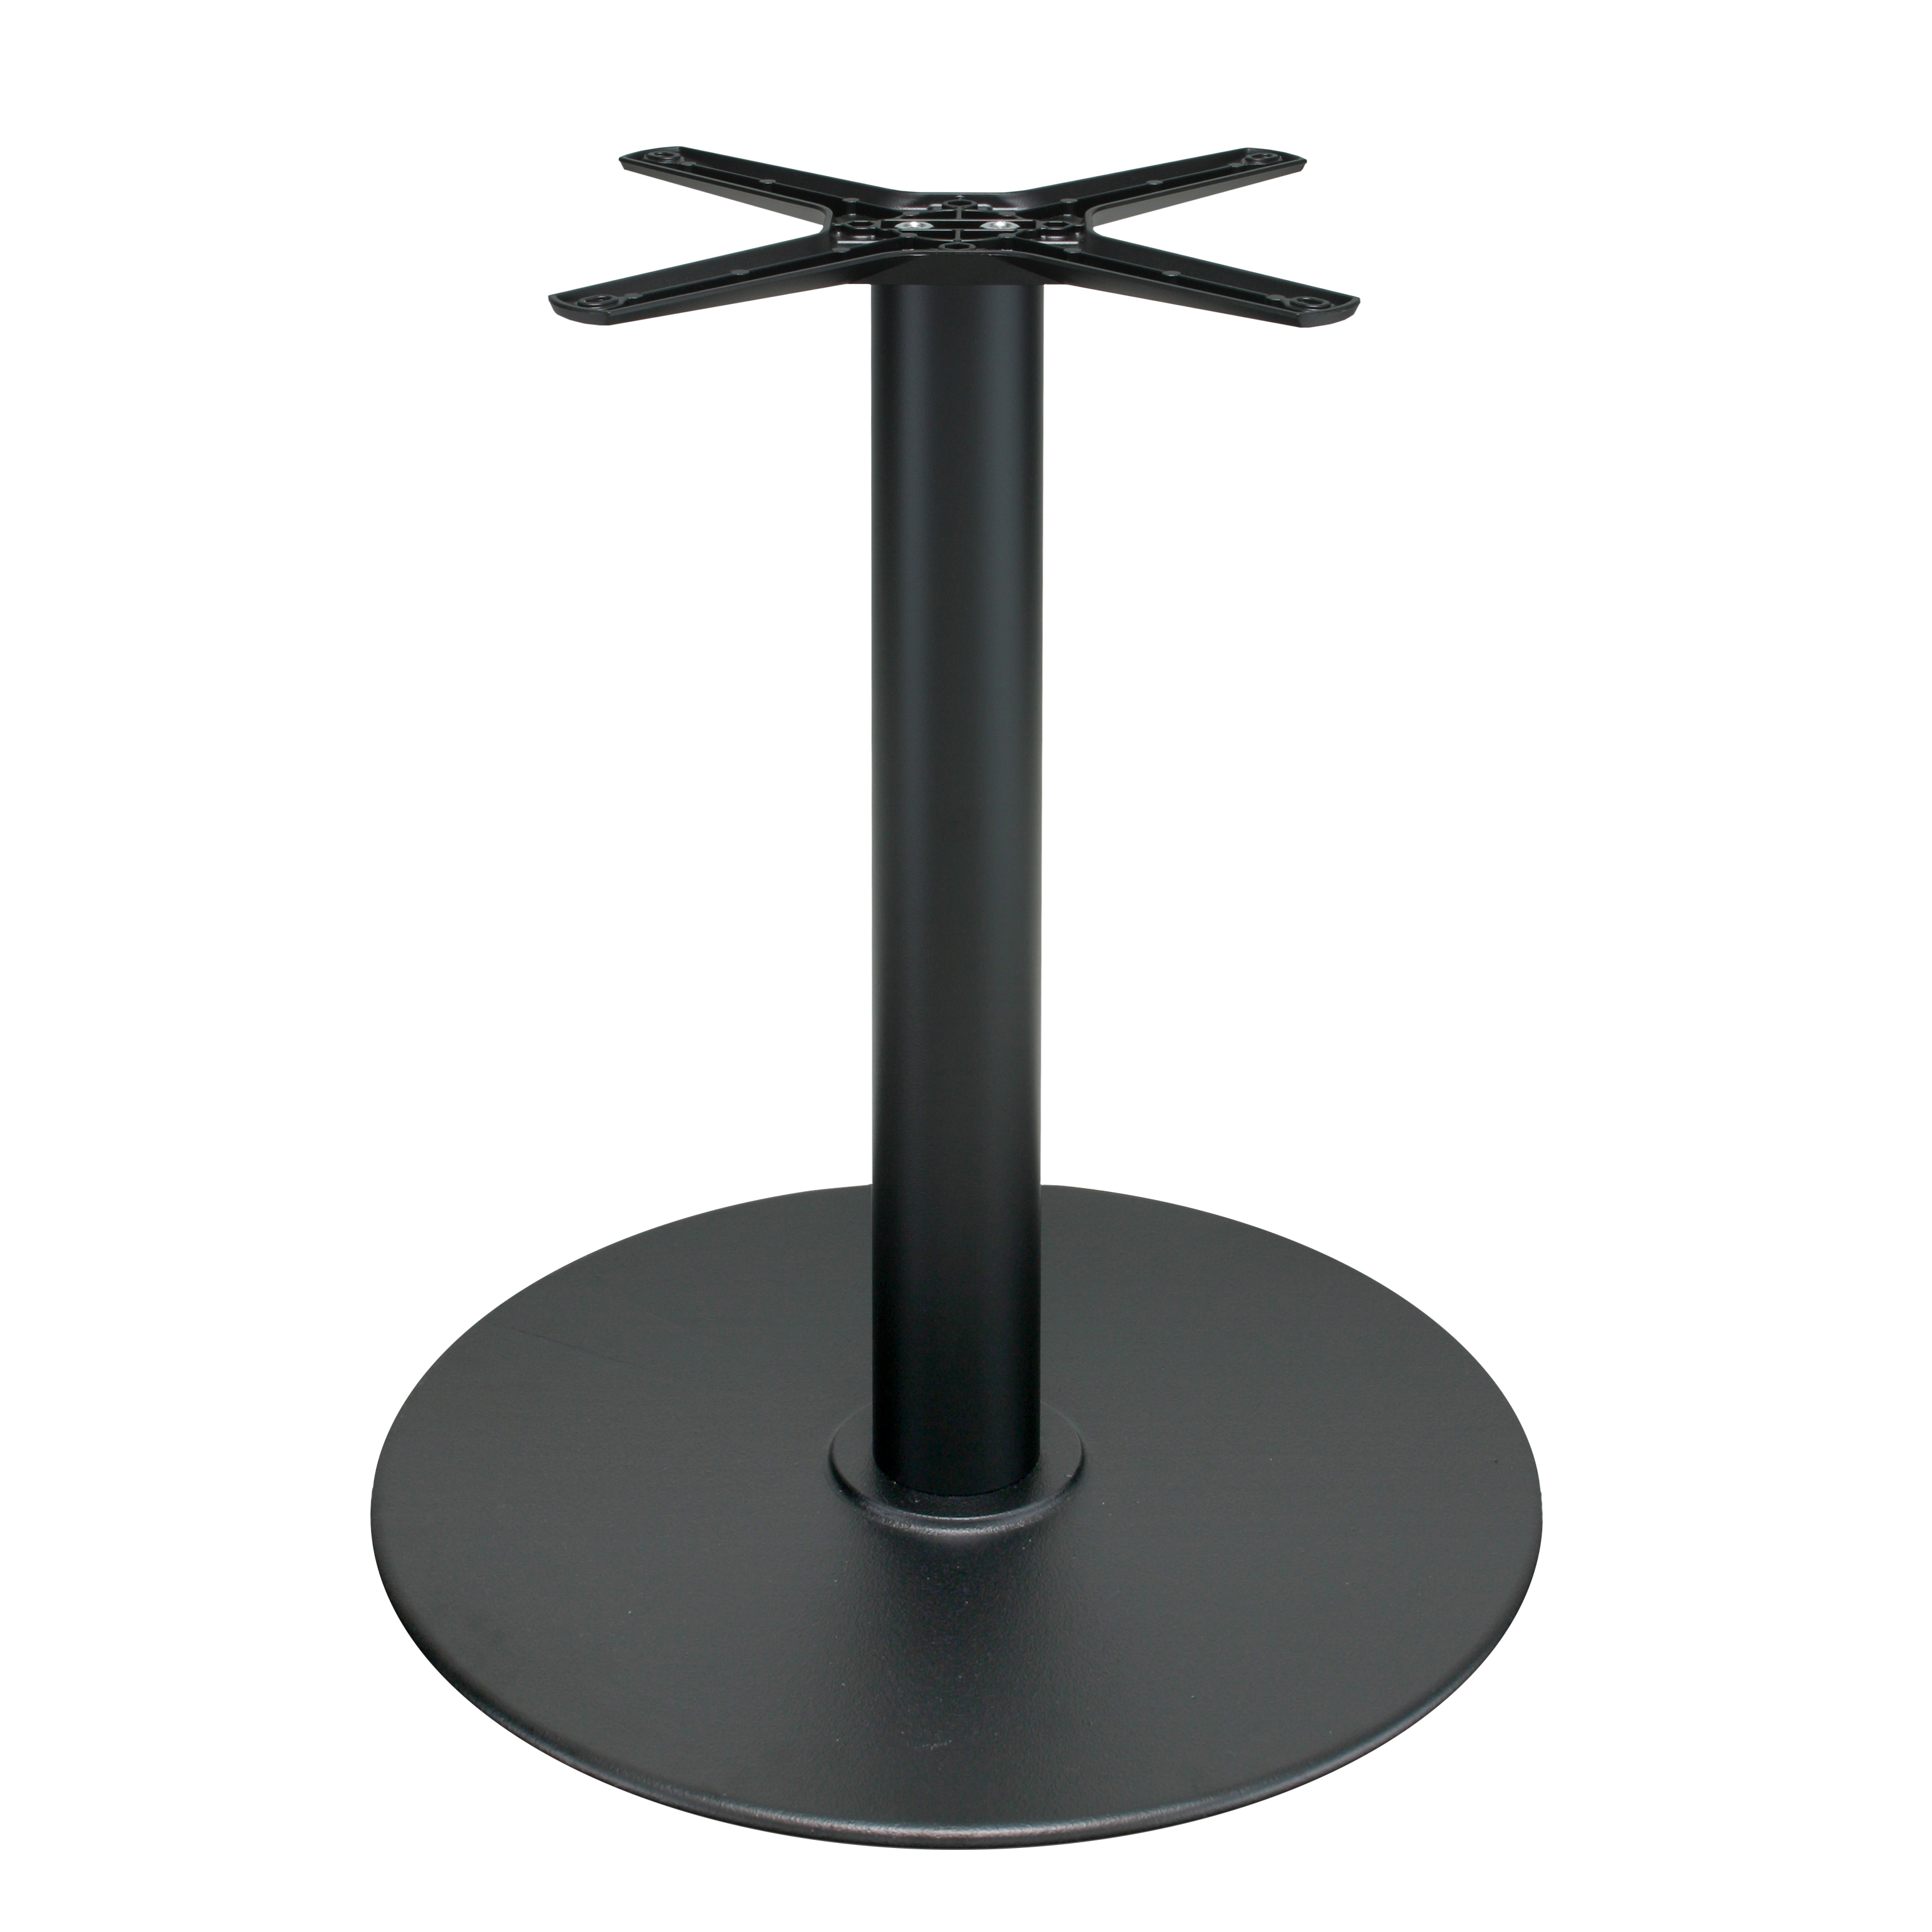 Tischgestell P111 - Gusseisen - pulverbeschichtet schwarz - rund